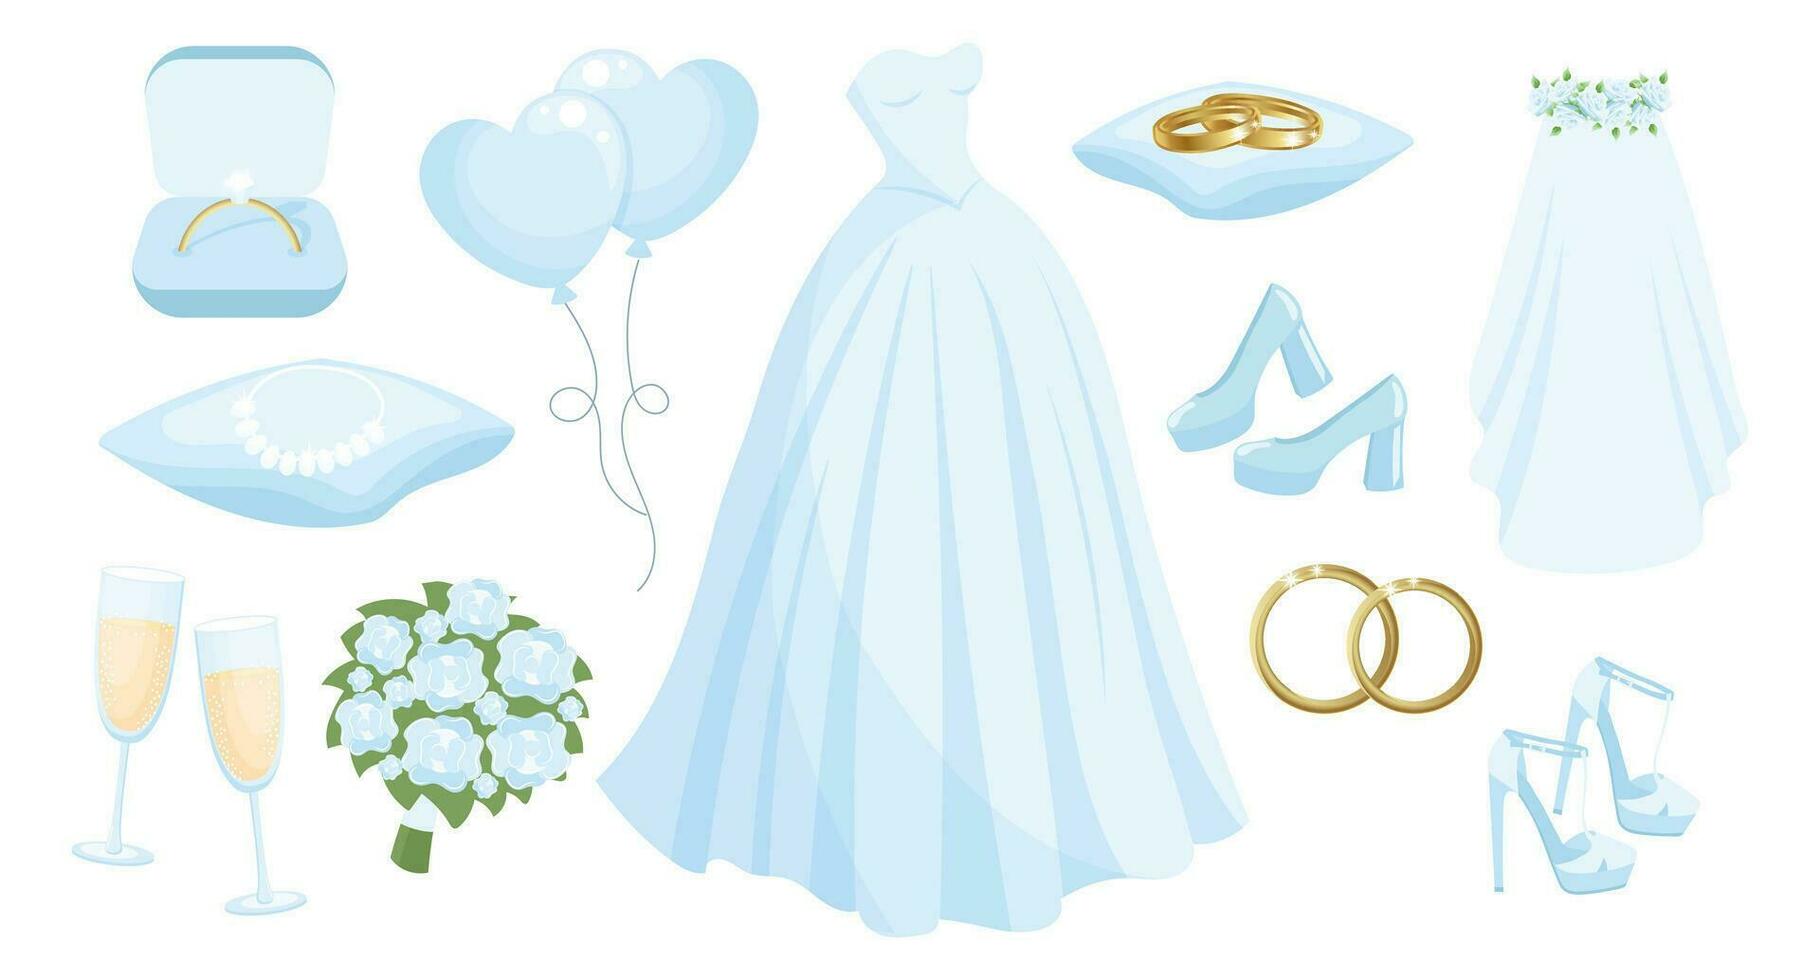 Casamento conjunto do roupas e acessórios para a noiva, Casamento vestir, argolas, colar, sapato, véu, champanhe copos, ramalhete, balões. Projeto elementos, vetor